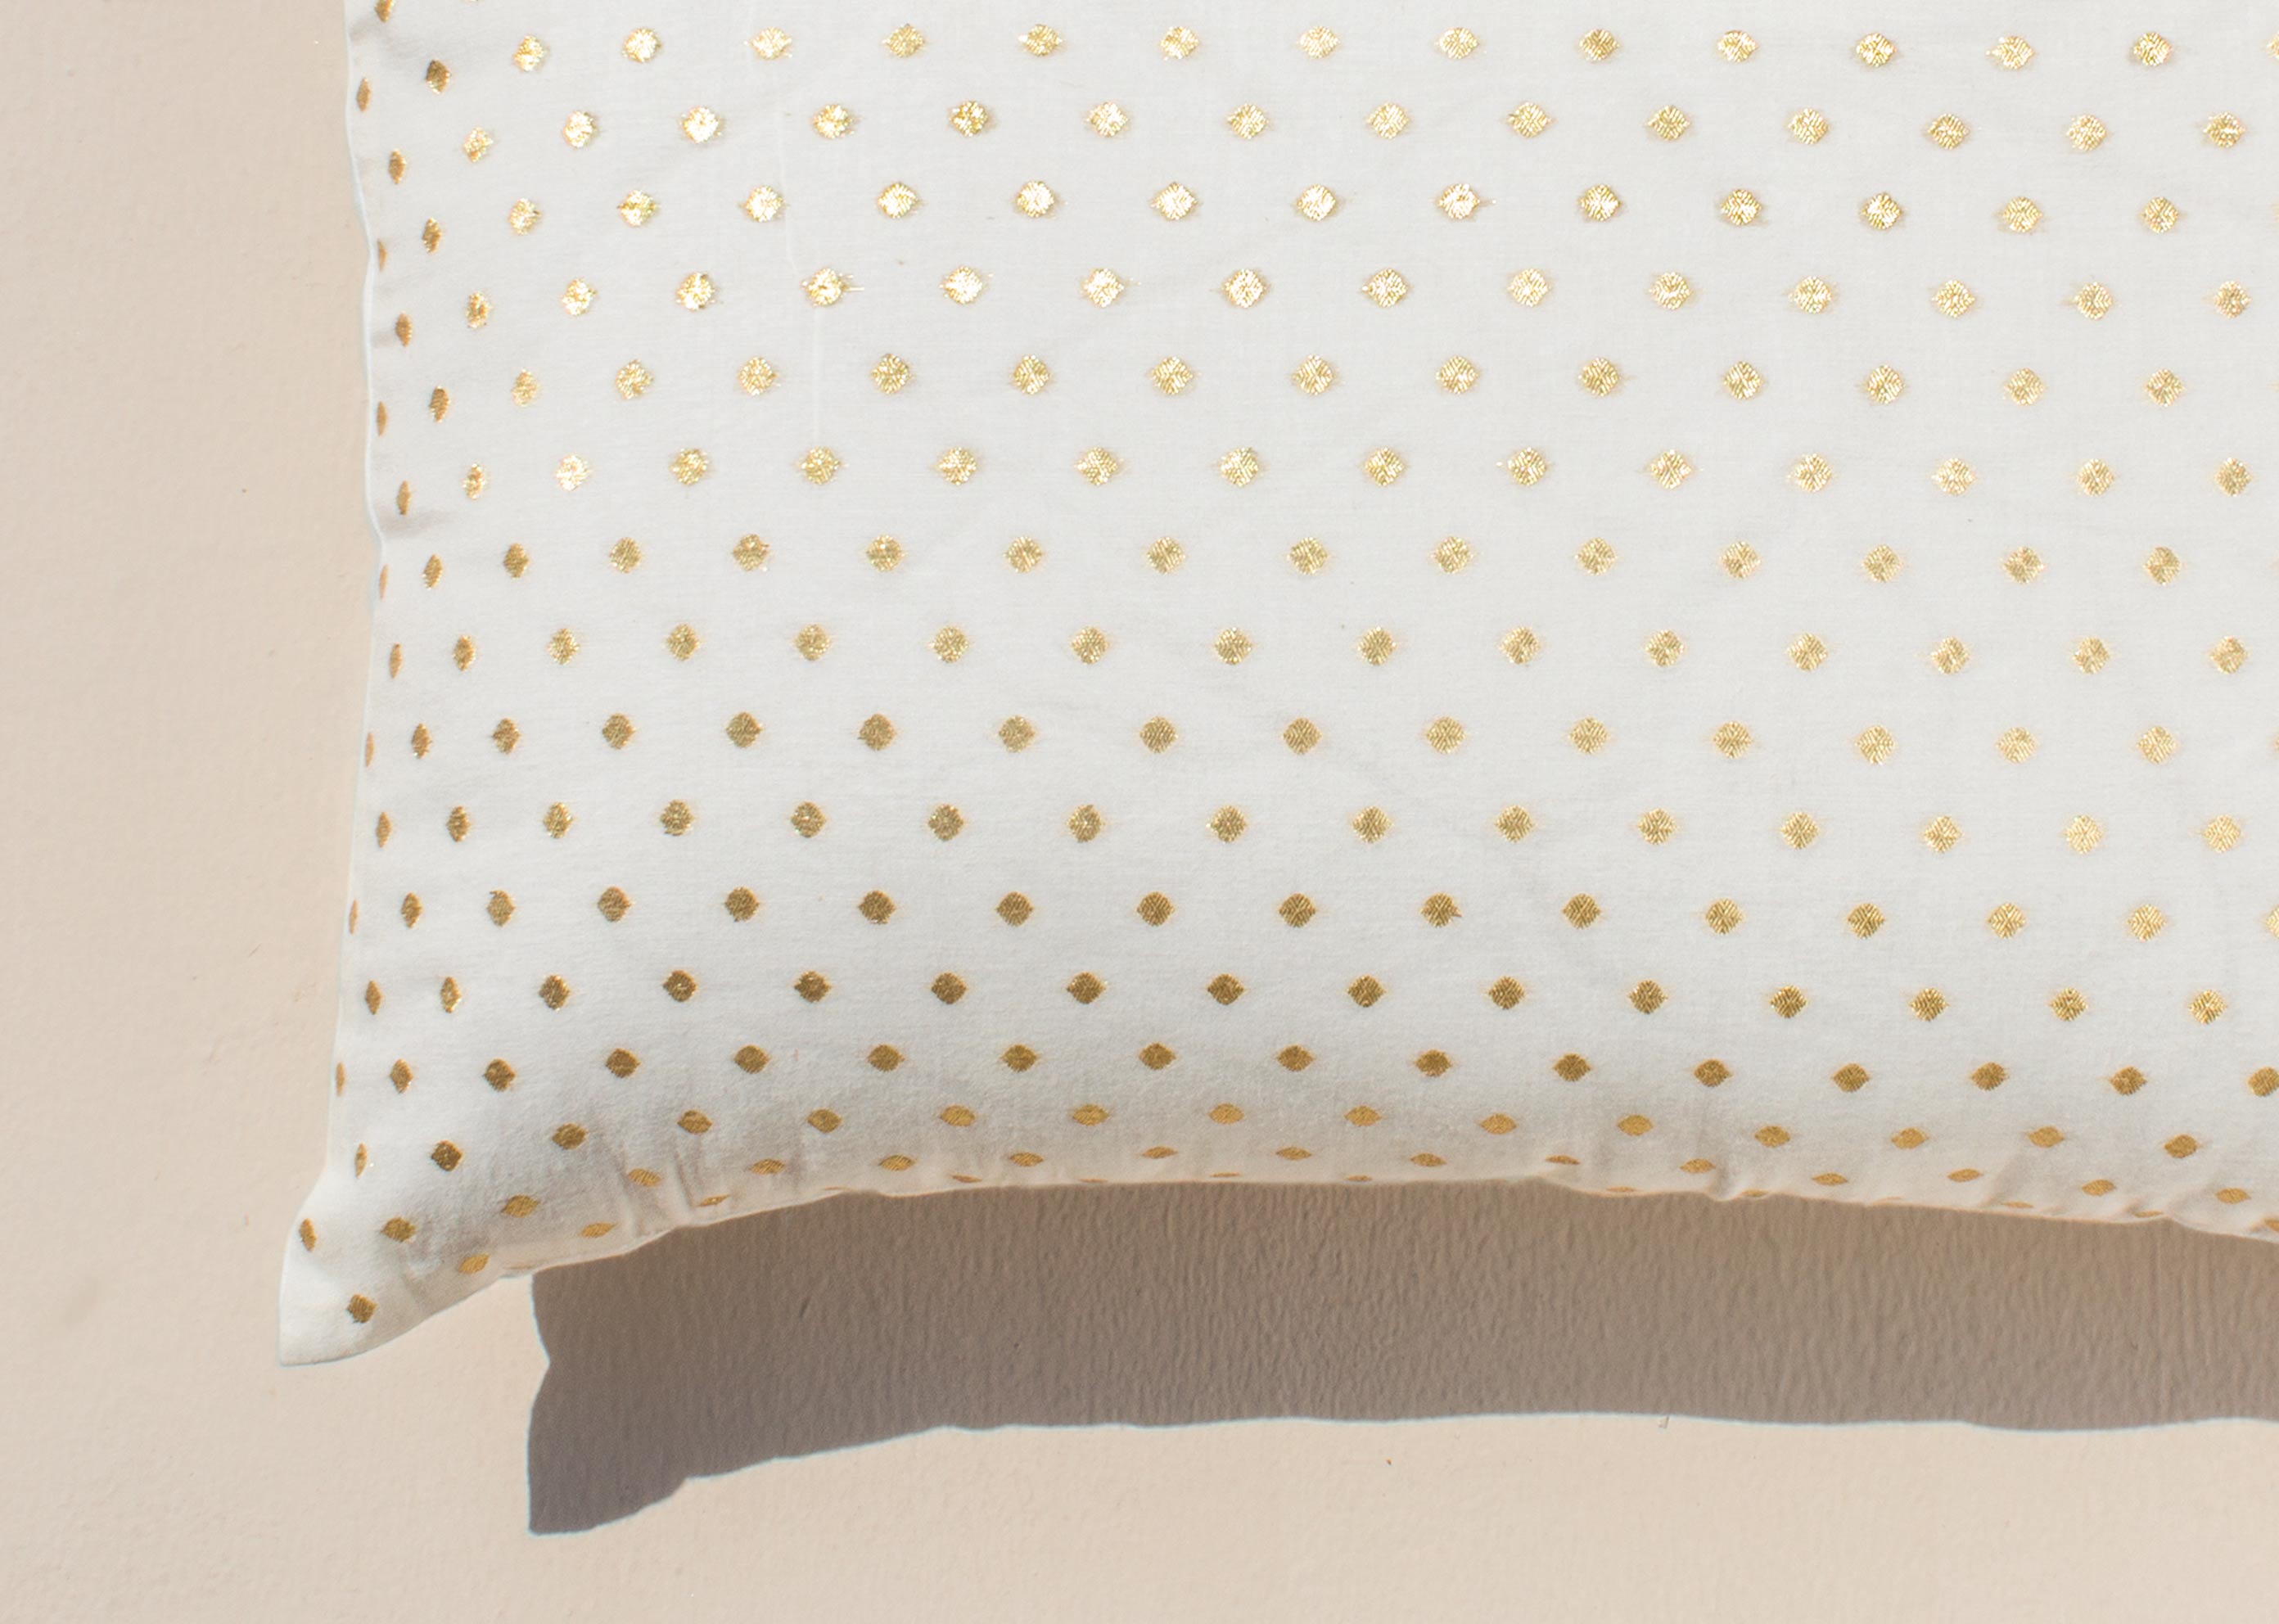 Dot Lumbar Pillow Cover